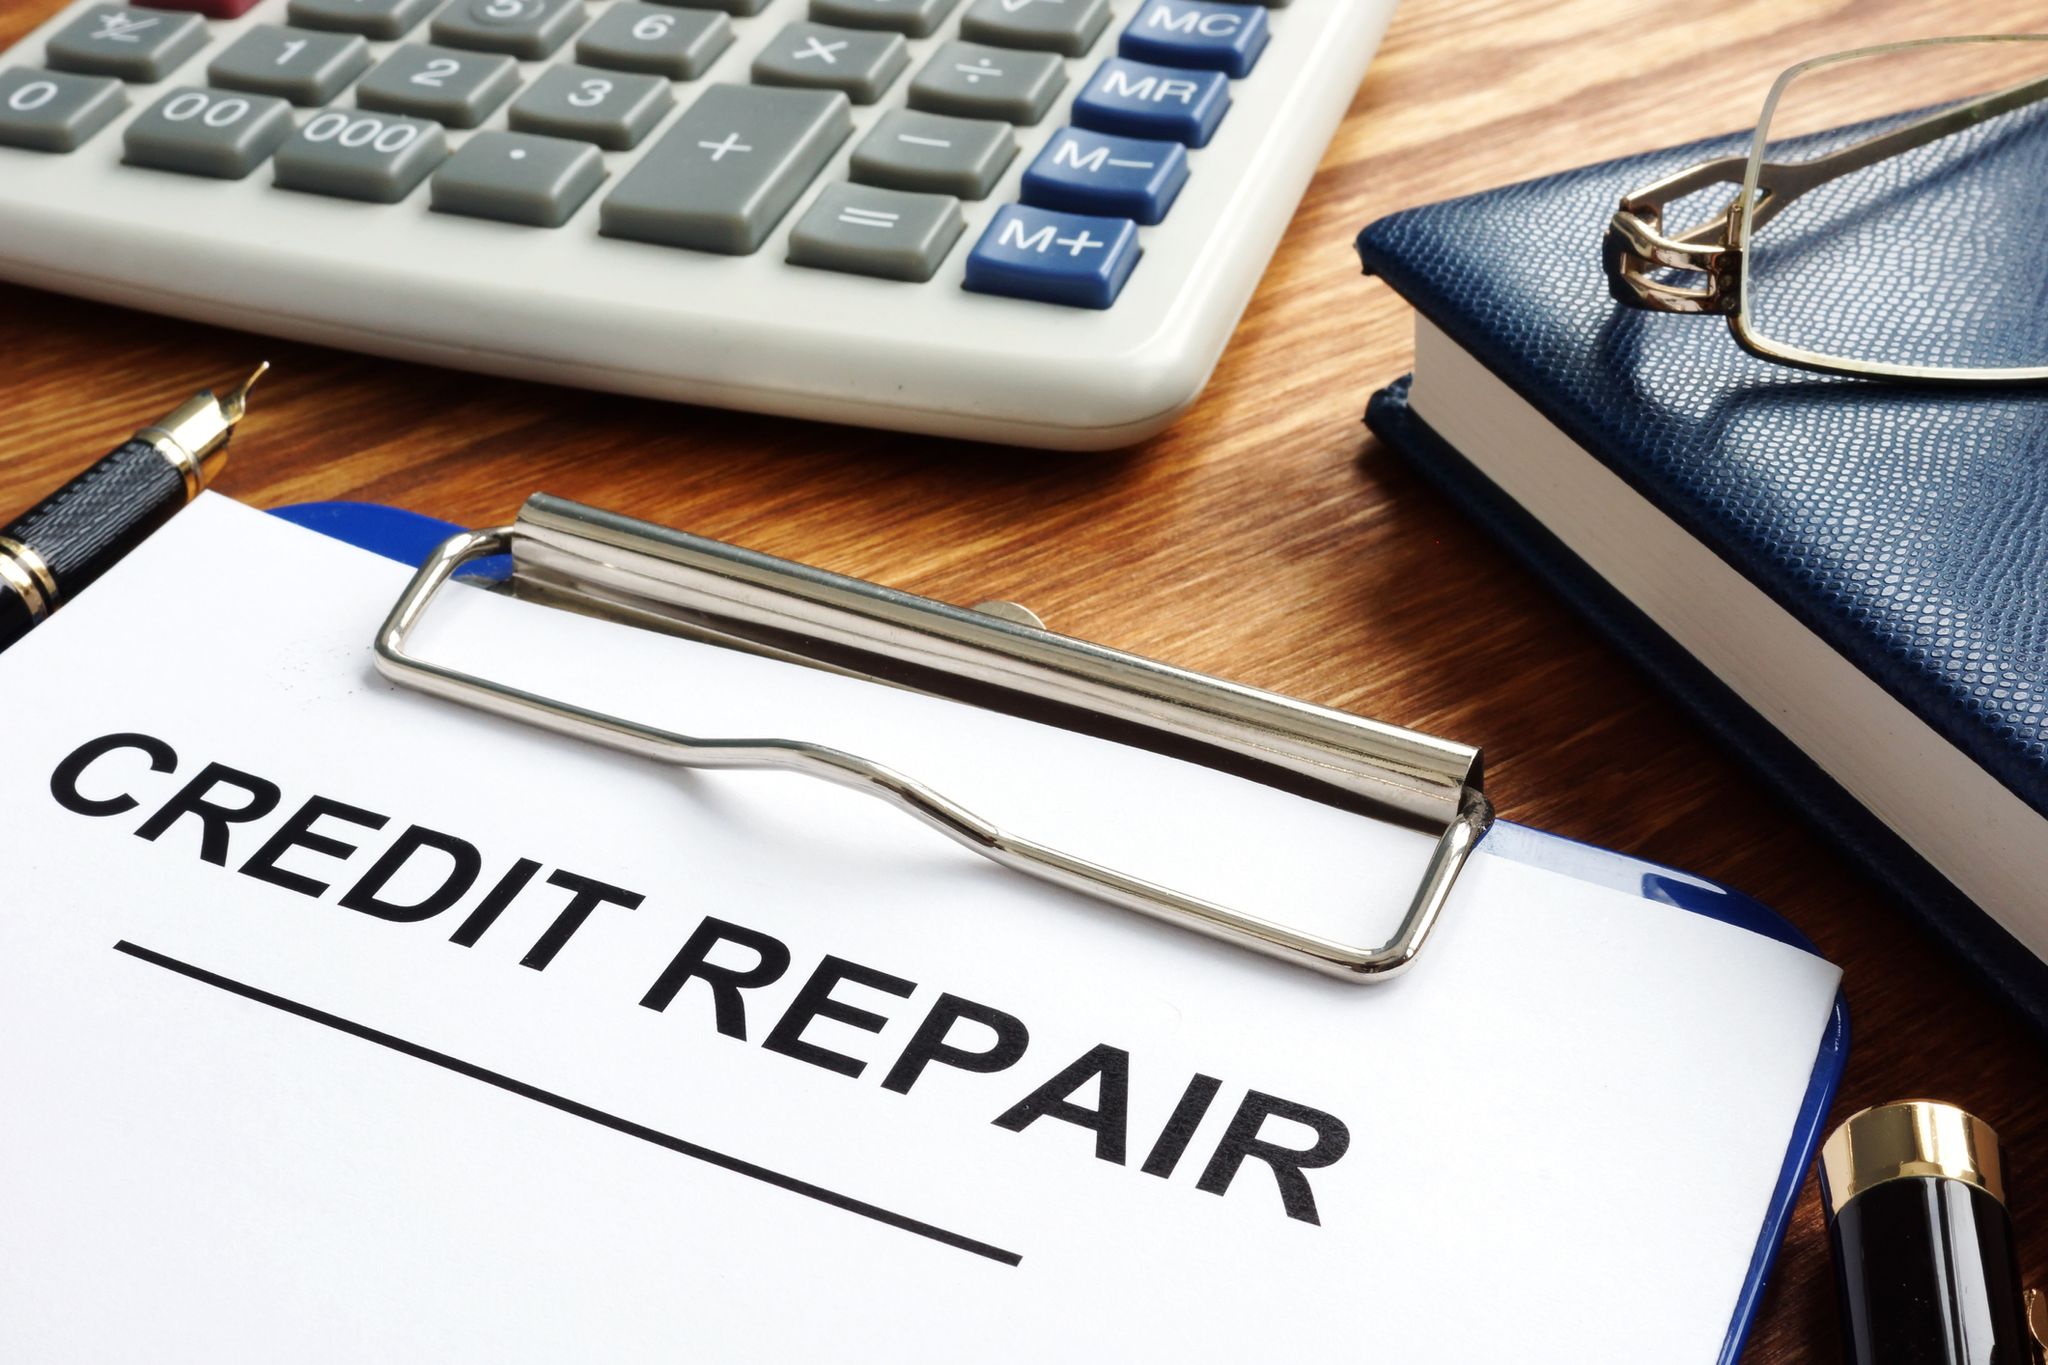 April’s Credit Repair